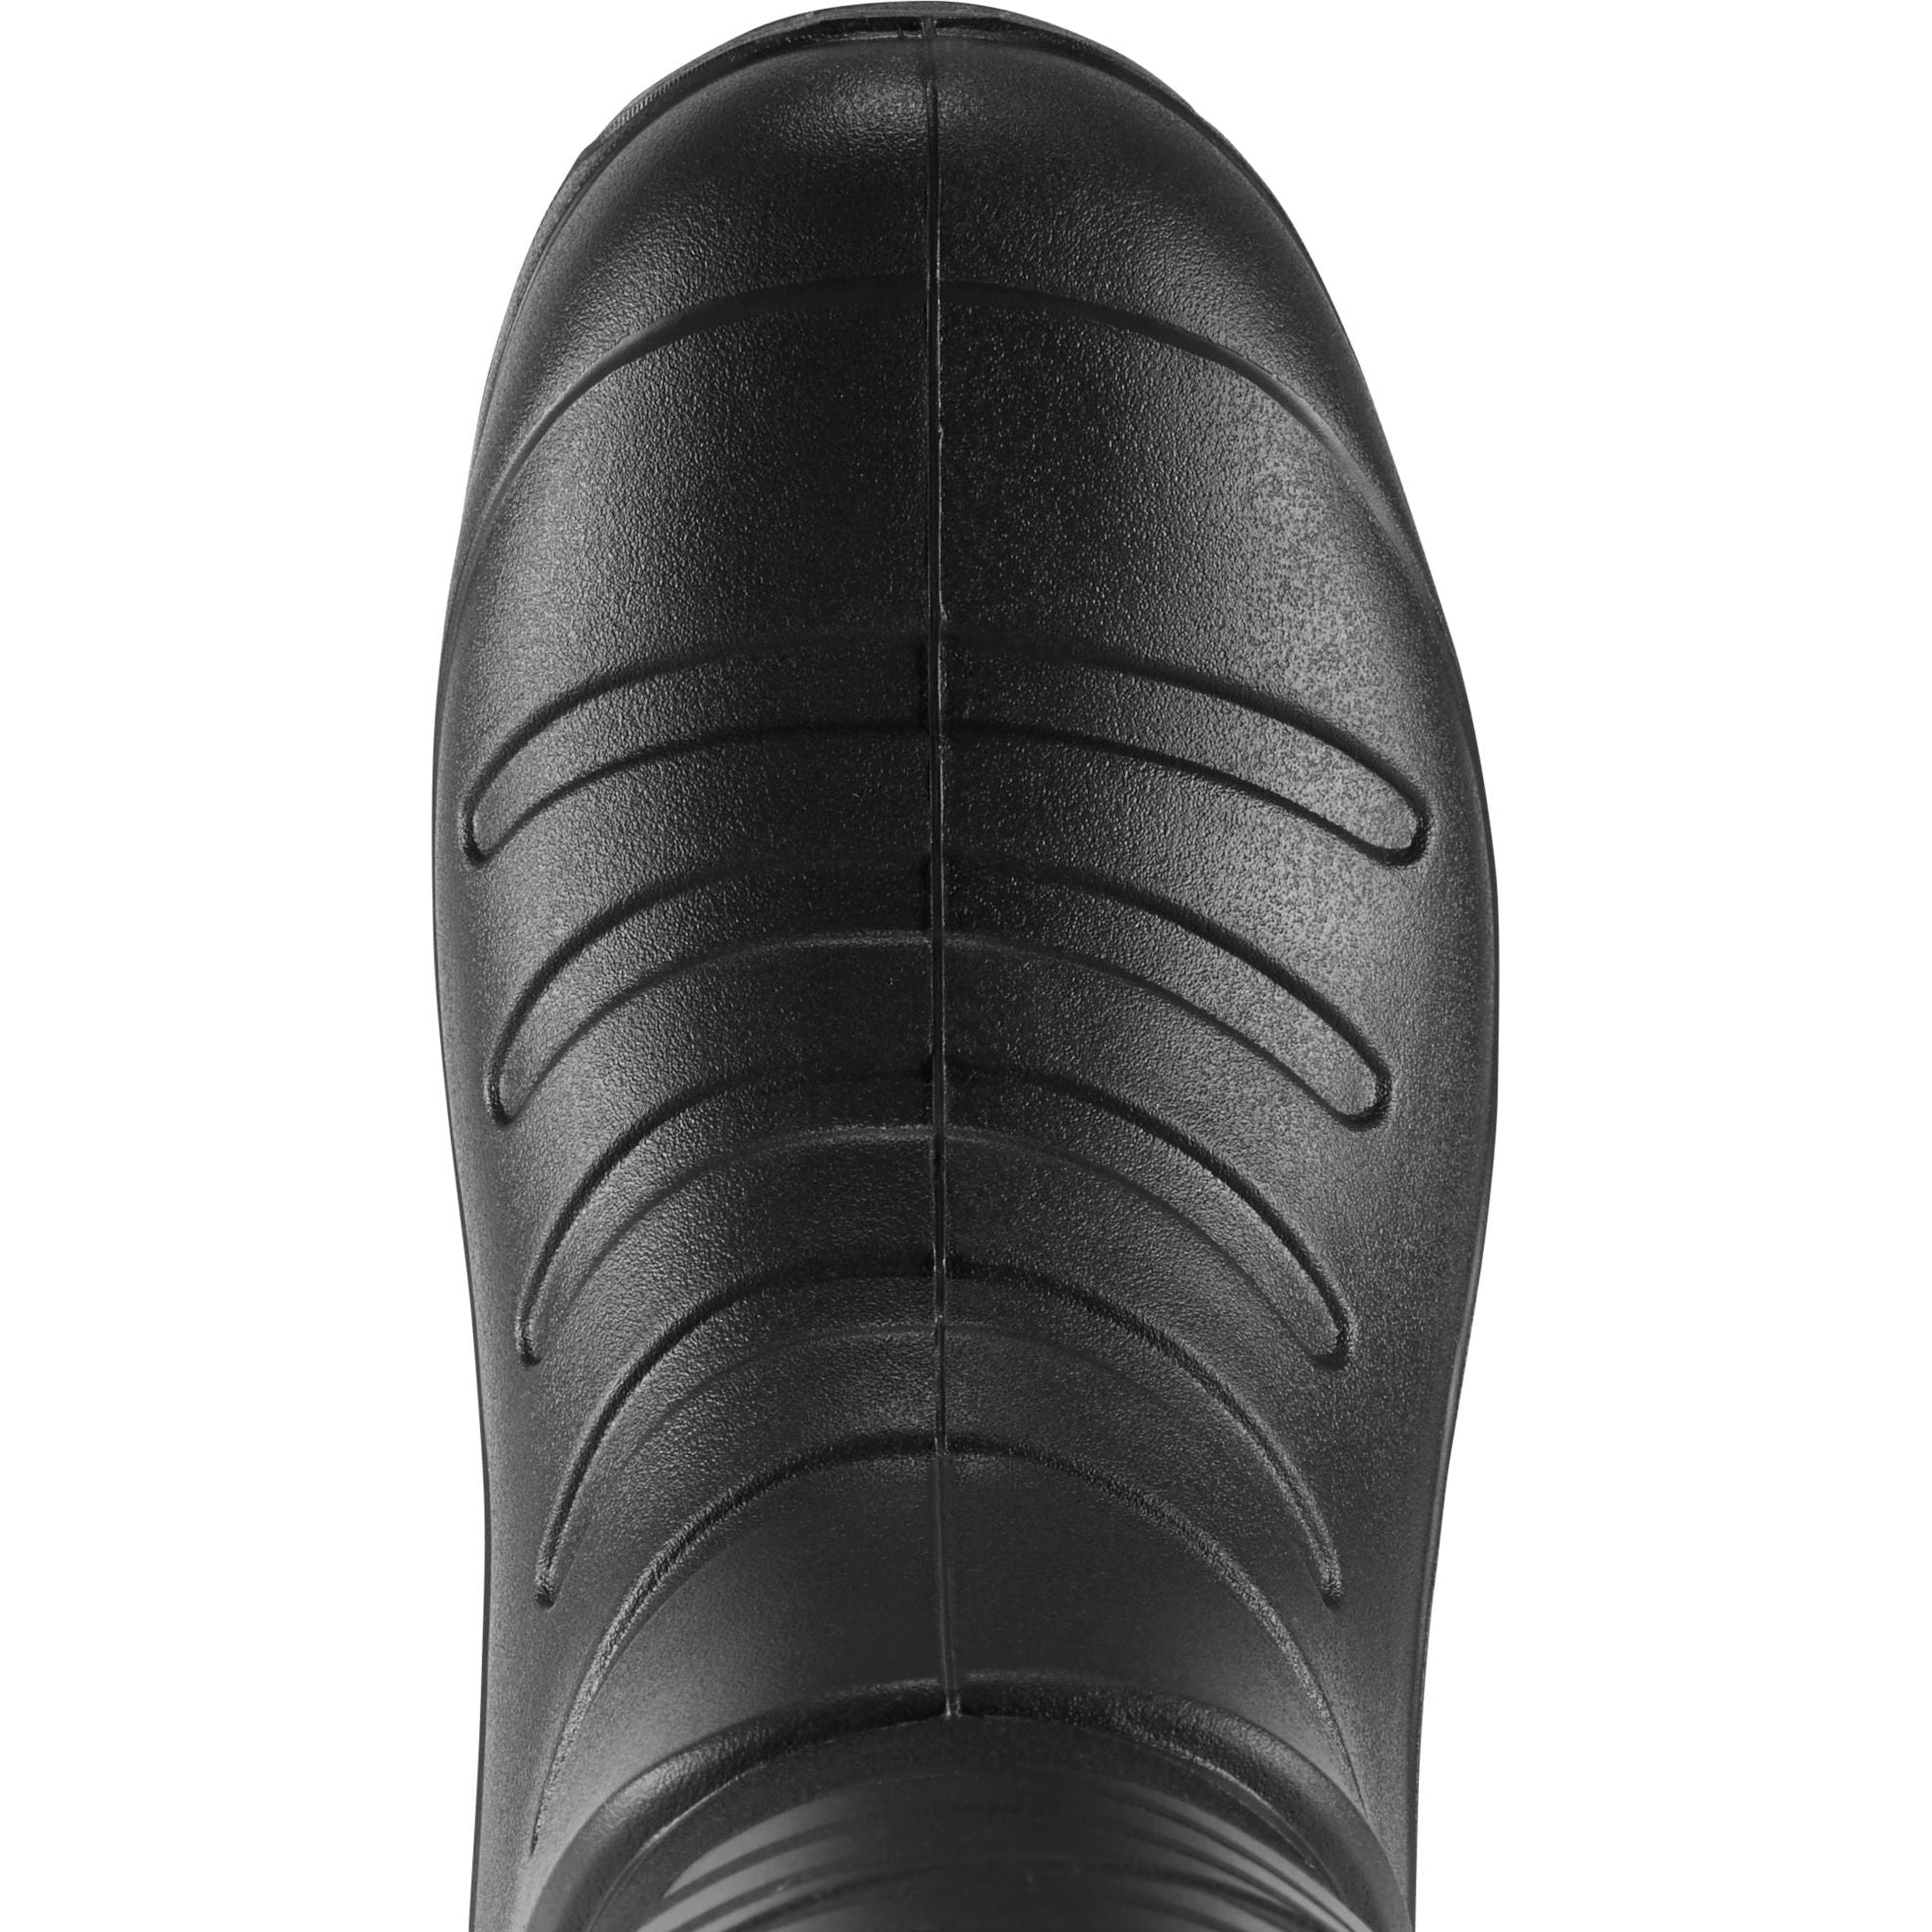 LaCrosse Men's Aero Insulator 14" Rubber Work Boot - Black - 664550  - Overlook Boots